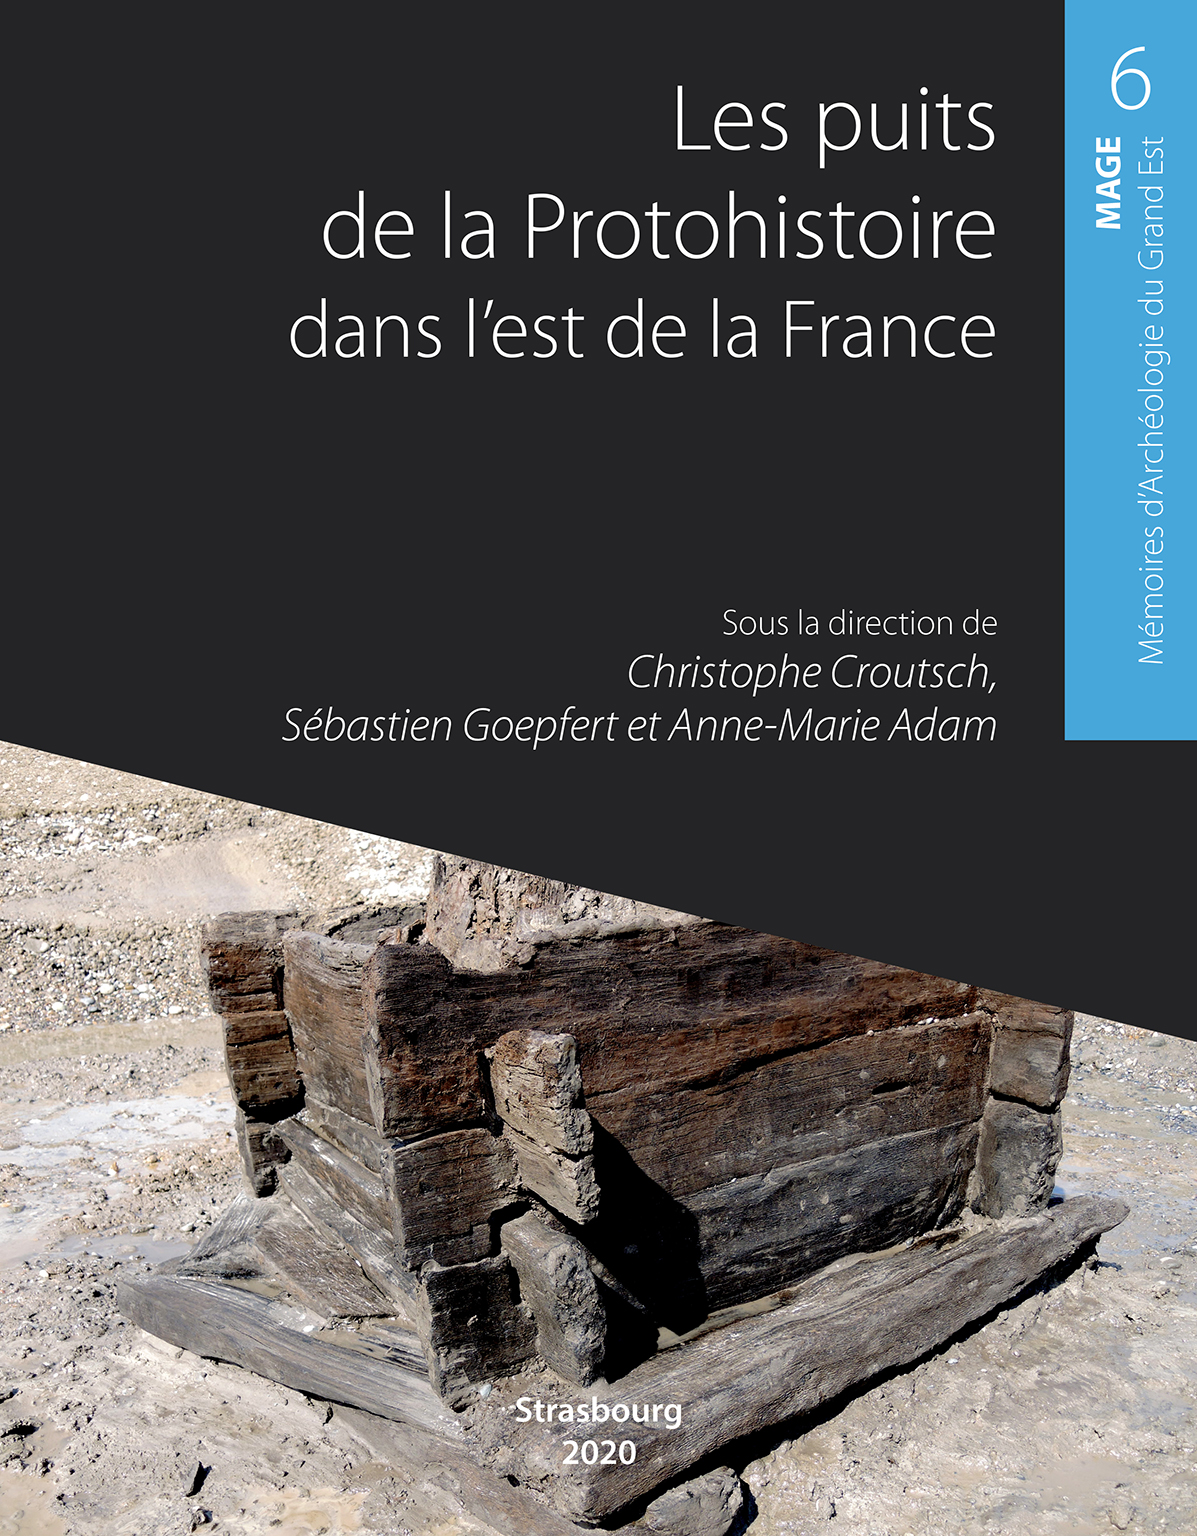 Les puits de la Protohistoire dans l'est de la France, (MAGE 6), 2020, 256 p.